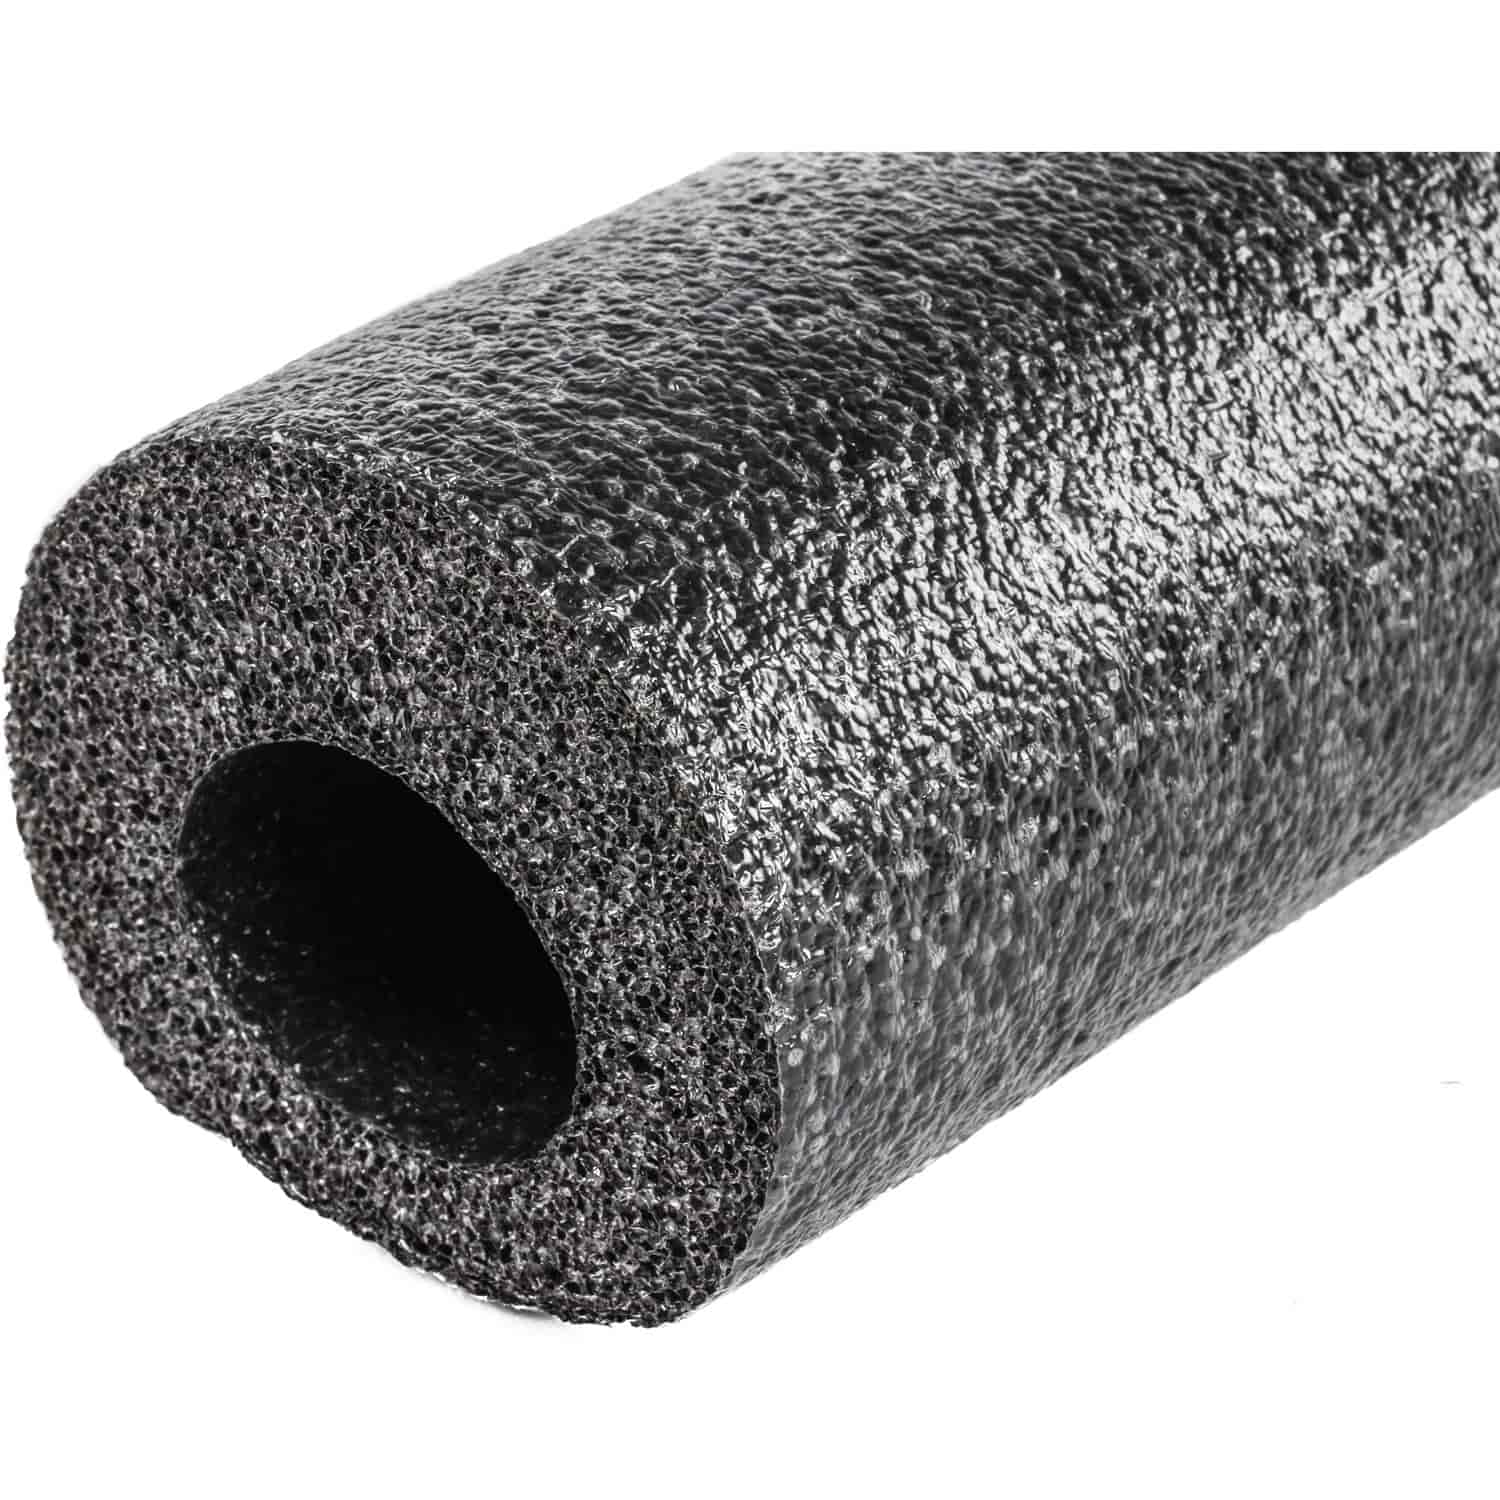 Moroso 80939 High-Density Foam Roll bar Padding (Black, 3ft. Lengths, 3 diameter)